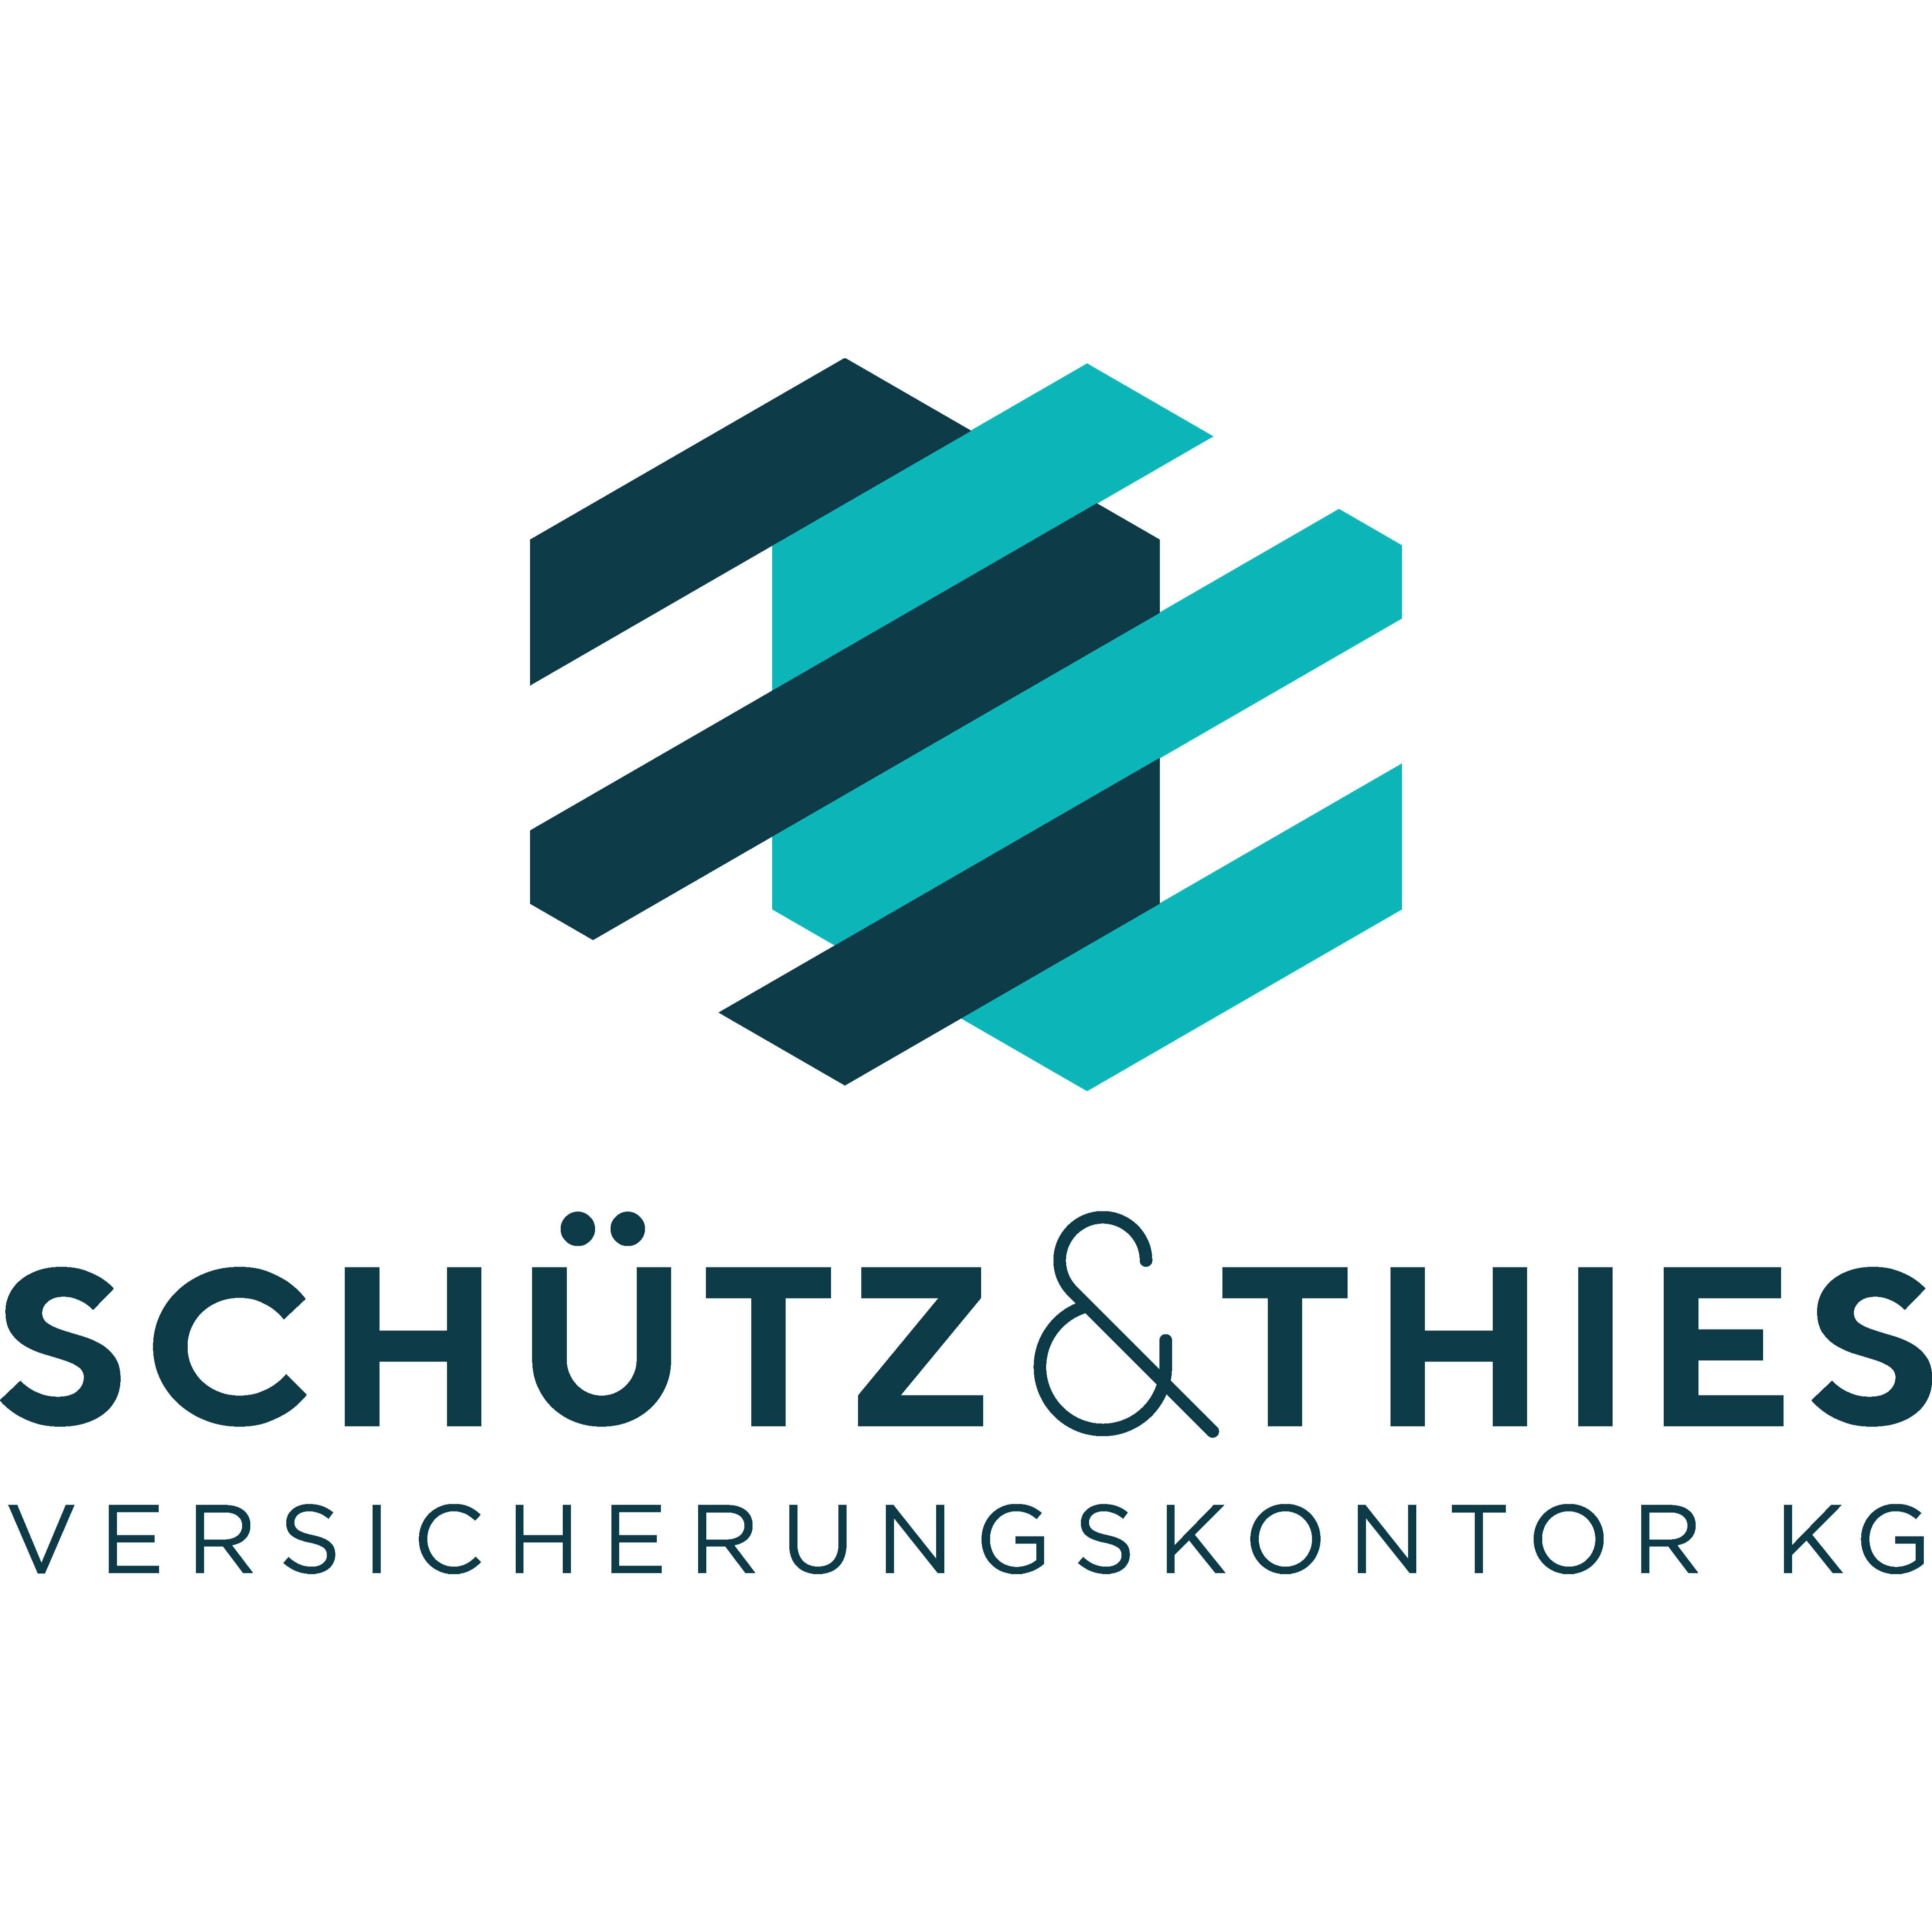 Schütz & Thies Versicherungskontor KG  